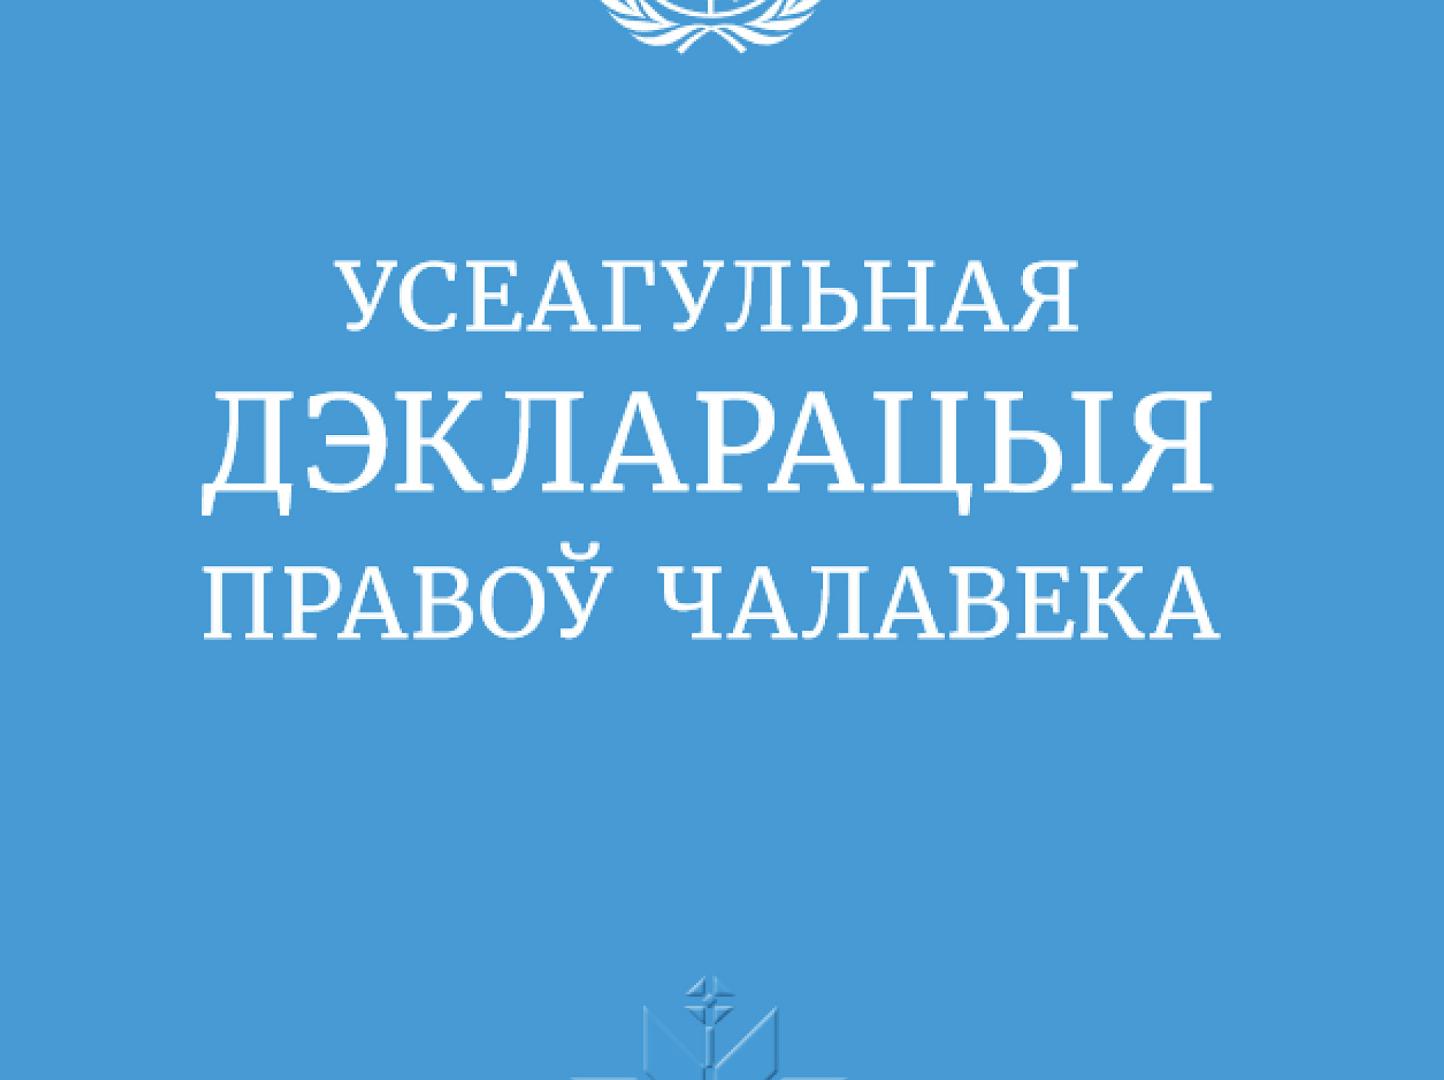 Всеобщая декларация прав человека на белорусском языке 